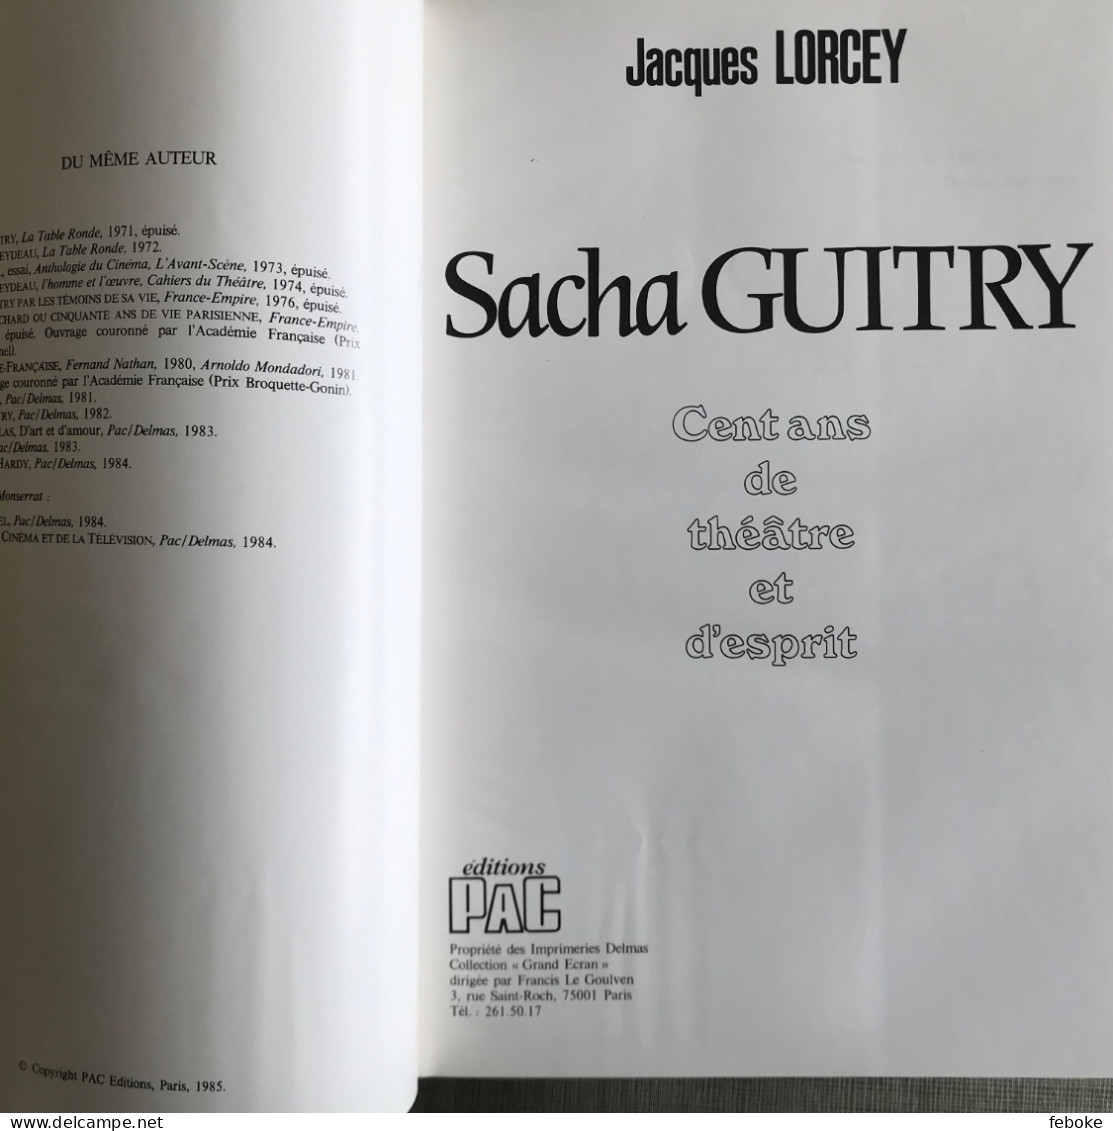 SACHA GUITRY 100 ANS DE THEATRE ET D'ESPRIT DE JACQUES LORCEY PAC EDITIONS PARIS 1985 - Franse Schrijvers